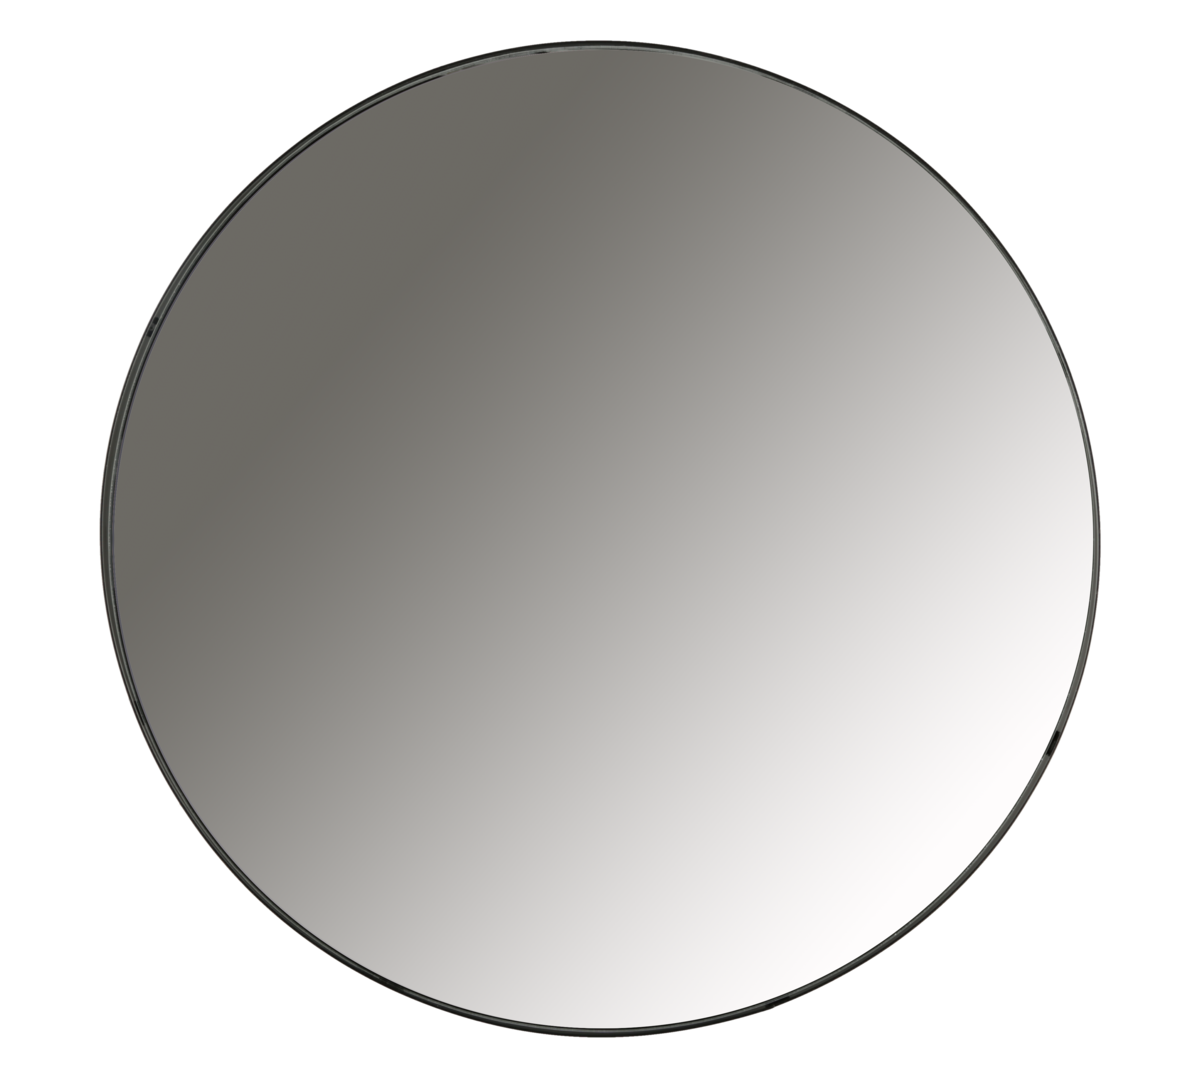 Suuri pyöreä peili, musta kehys, 75 cm